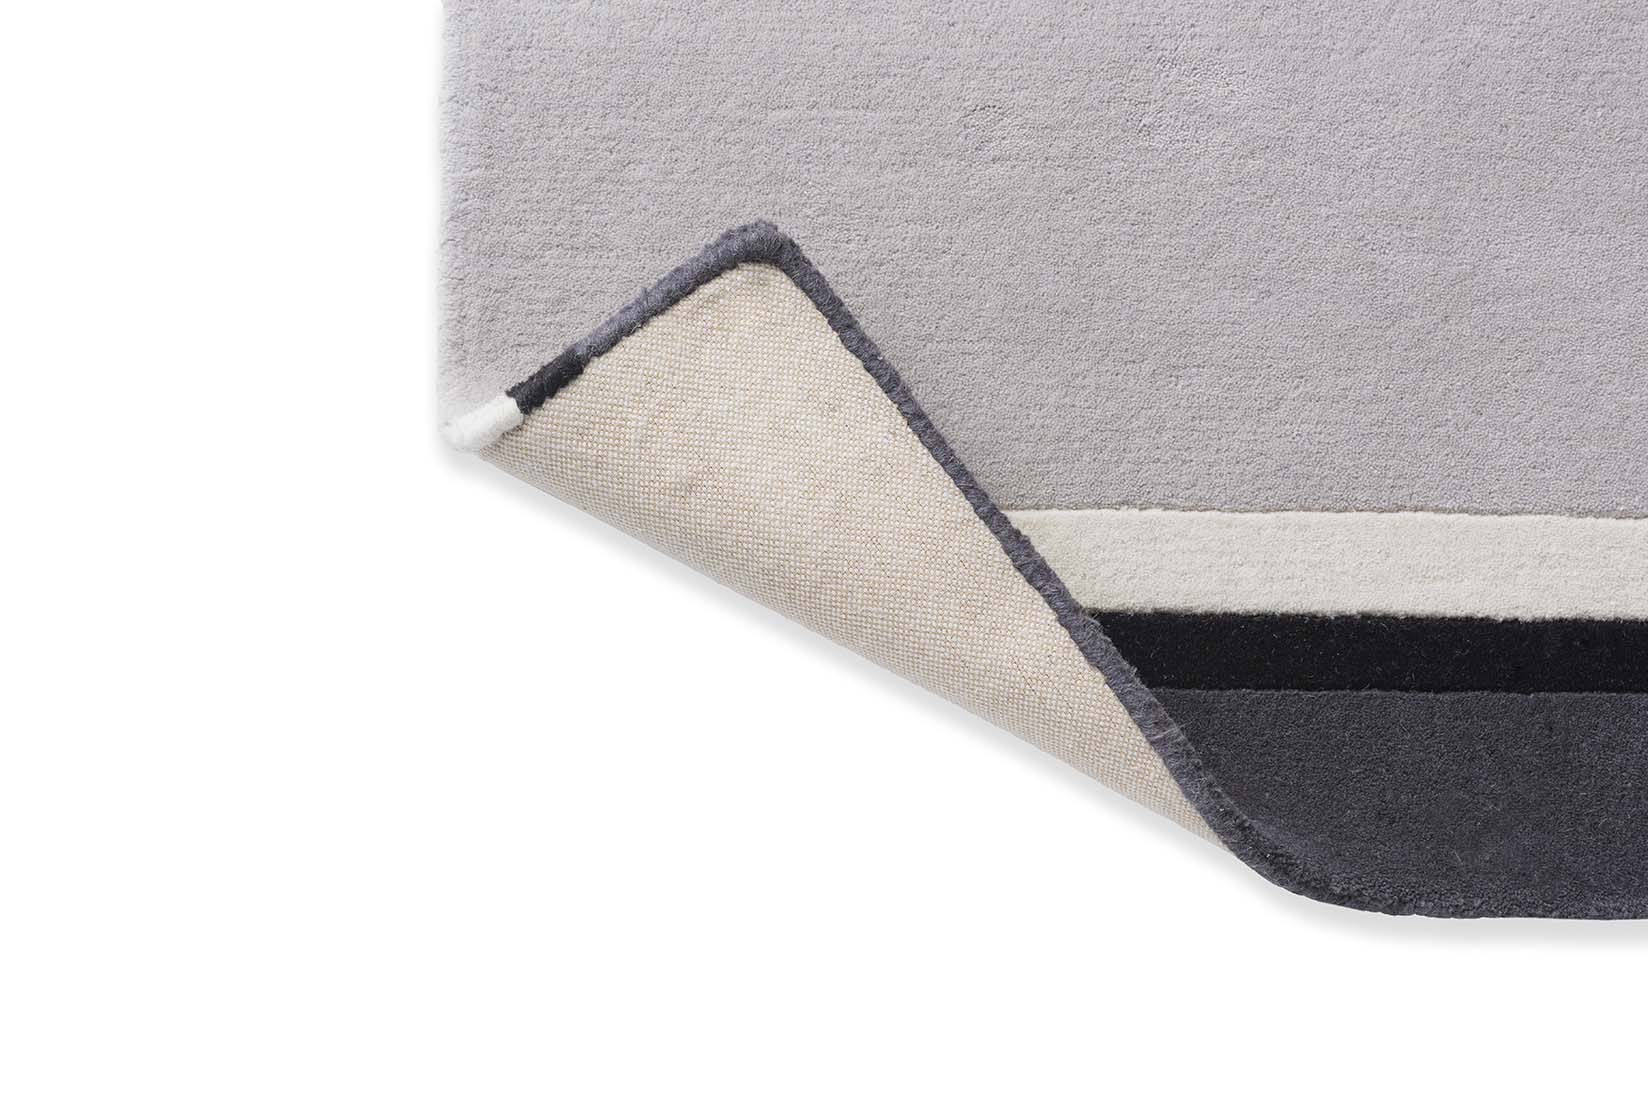 Simple grey and black stripe wool rug
